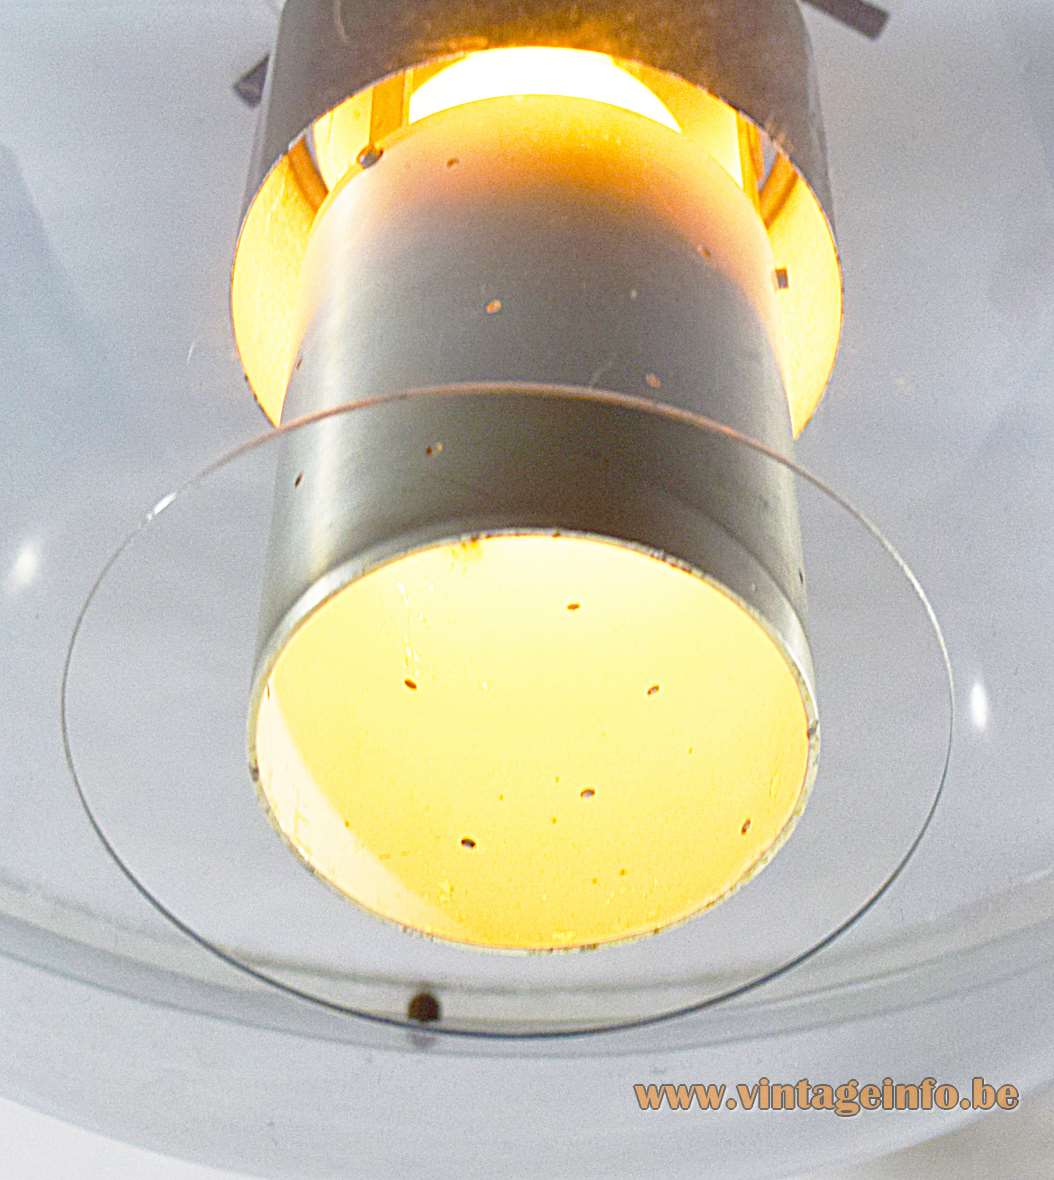 Raak Orbiter pendant lamp clear acrylic oval globe lampshade perforated aluminium tube diffuser 1950s 1960s 1970s